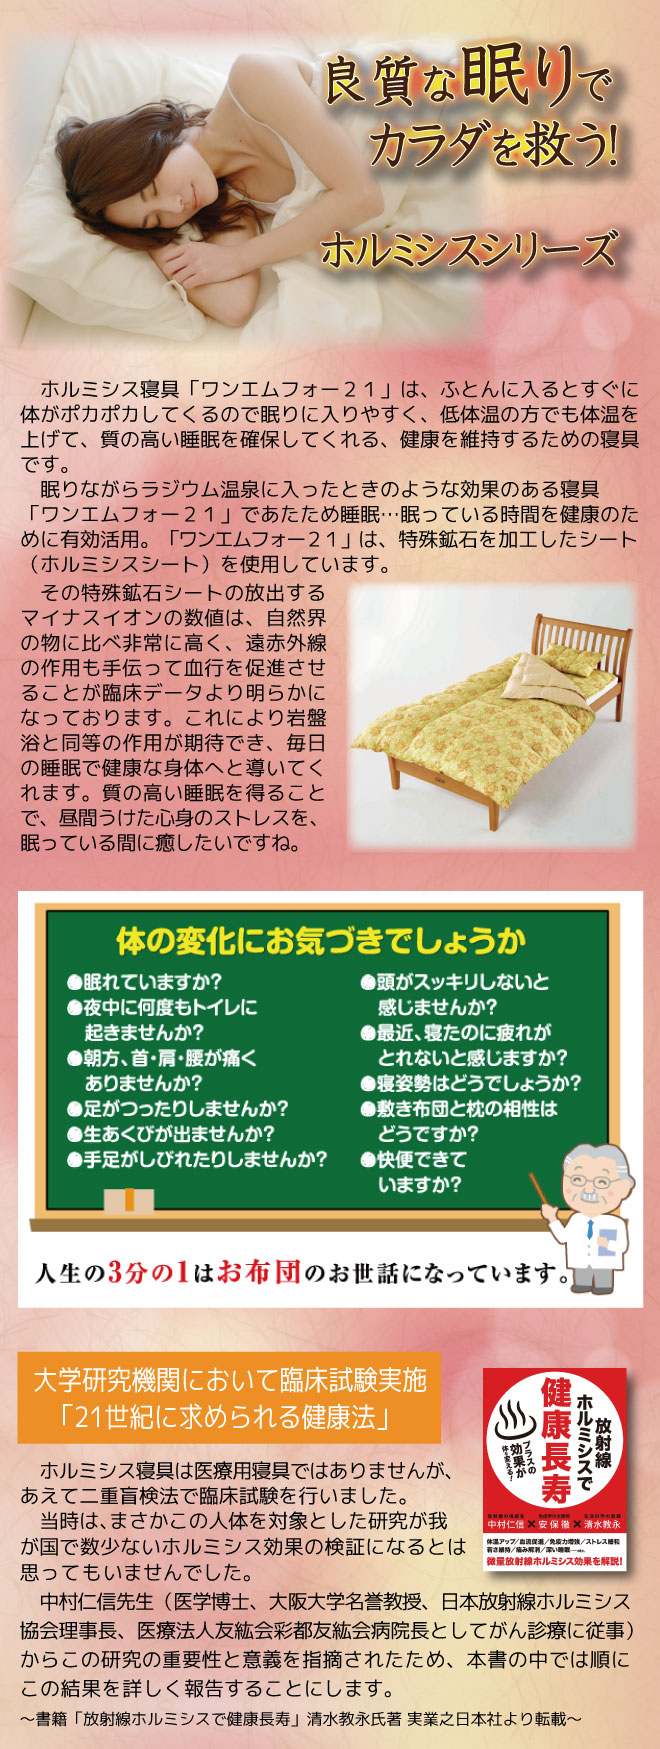 ホルミシス寝具シリーズ | 株式会社本物研究所 | 船井幸雄創業・健康